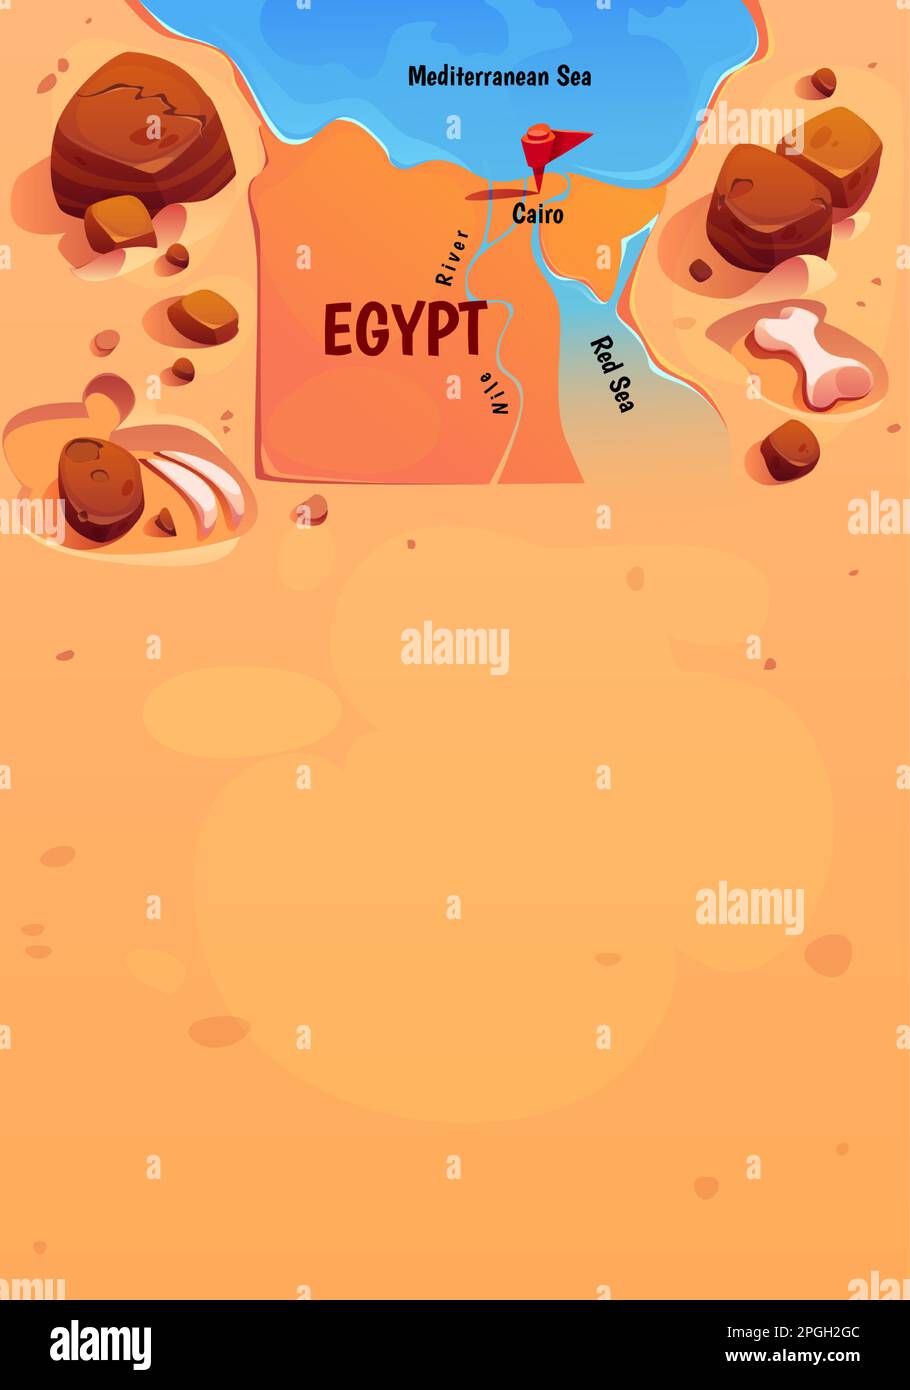 Geografische Karte Ägyptens mit Kairo, Nil, rotem und mediterranem Meer, Wüste. Poster mit ägyptischer Hauptstadt, Fluss, Knochen und Kopierraum, Vektorgrafik Stock Vektor